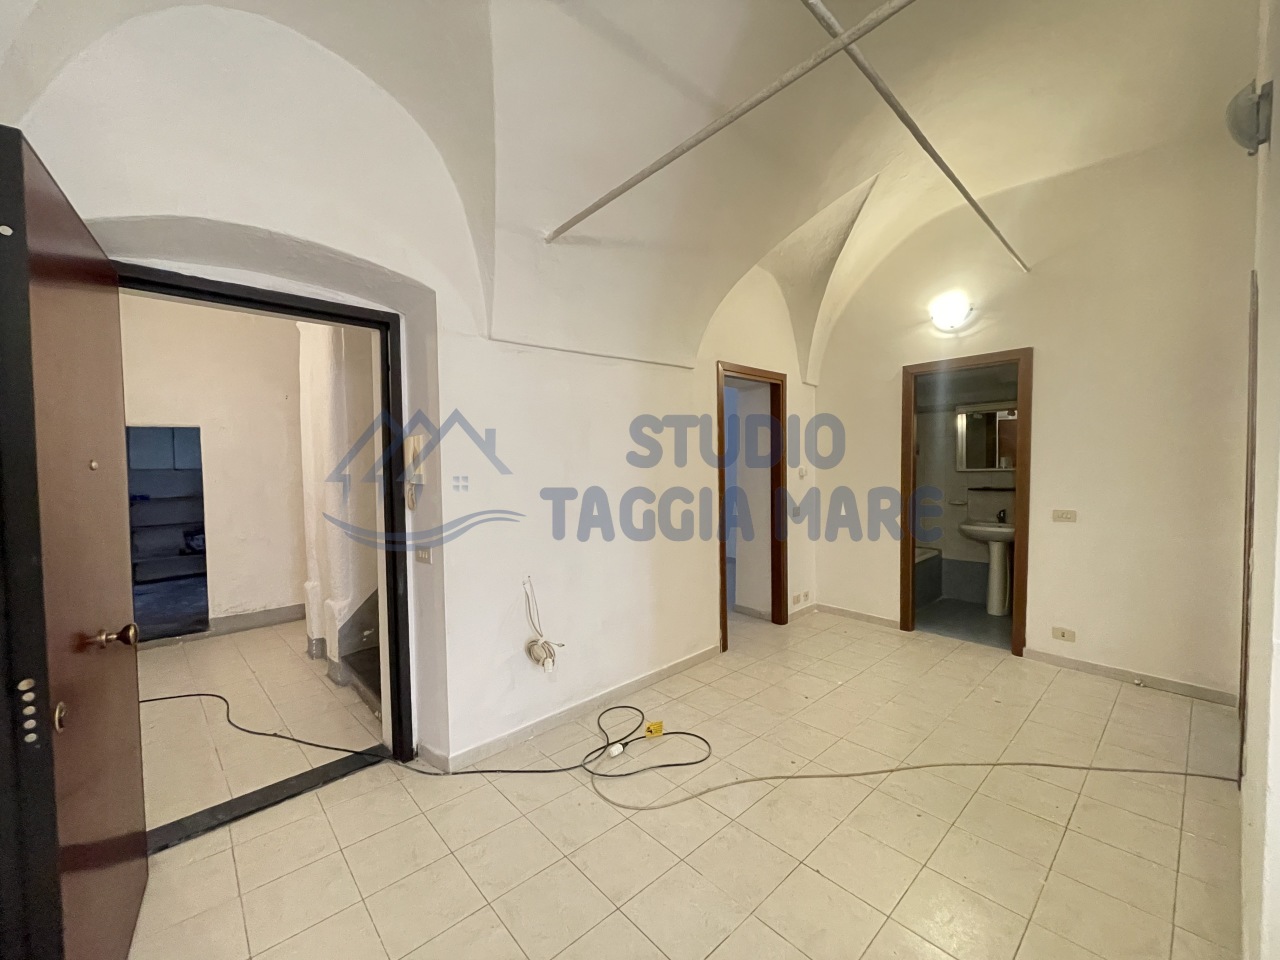 Appartamento in vendita a Taggia, 4 locali, prezzo € 80.000 | PortaleAgenzieImmobiliari.it